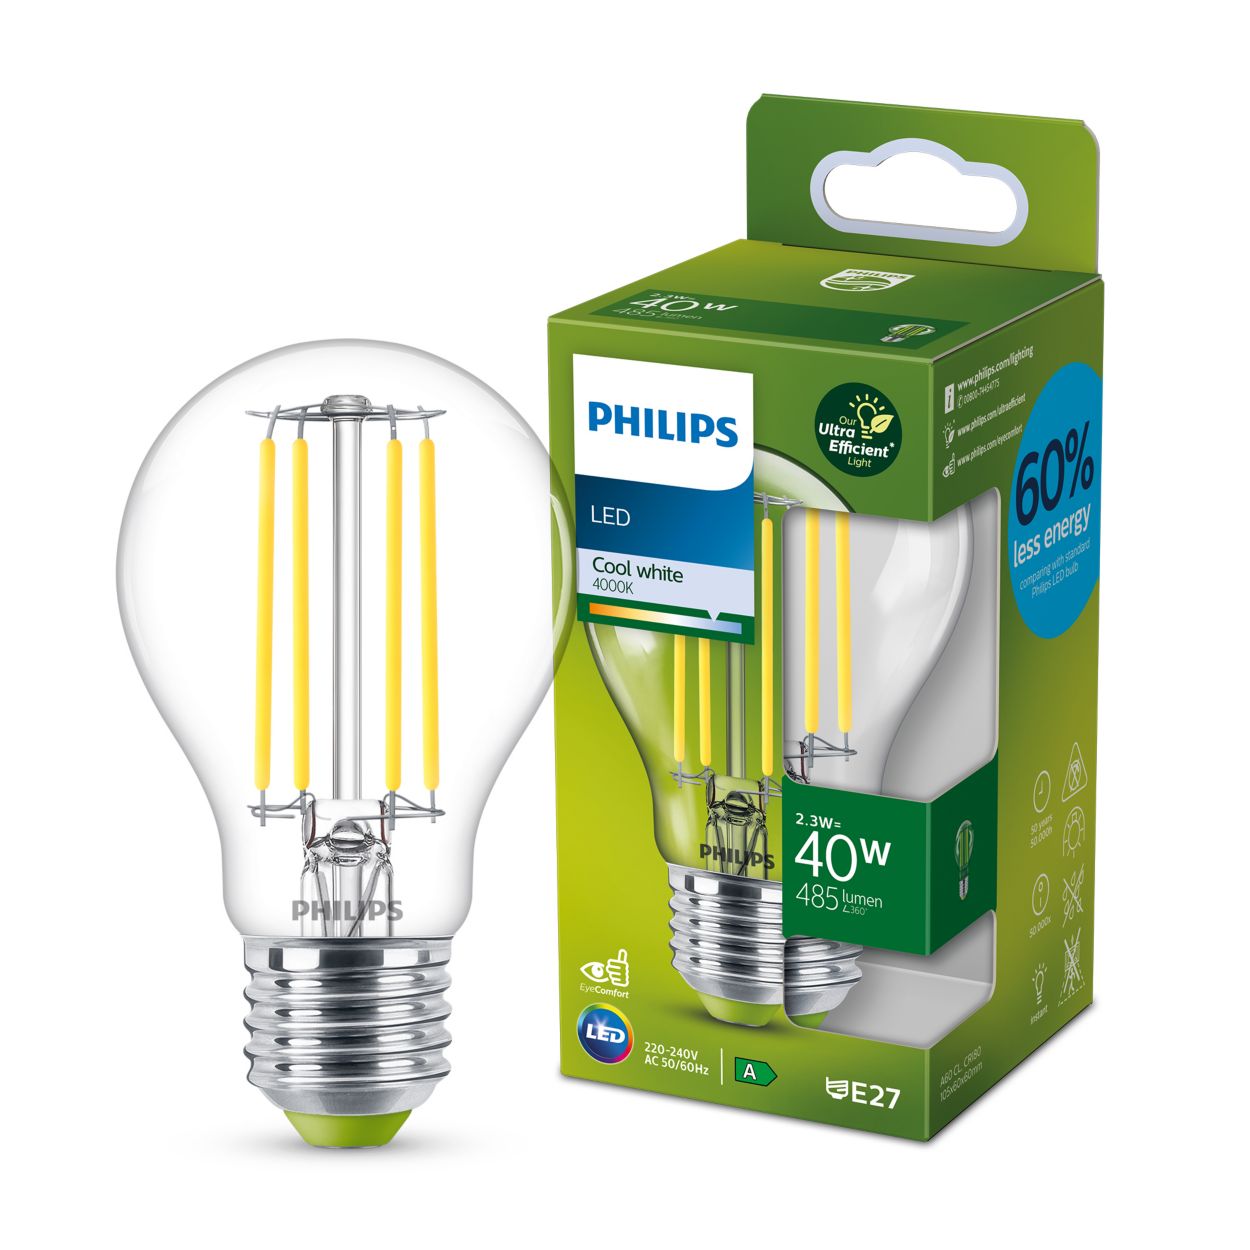 Aannemelijk ontploffen snorkel LED Bulb 8719514343740 | Philips